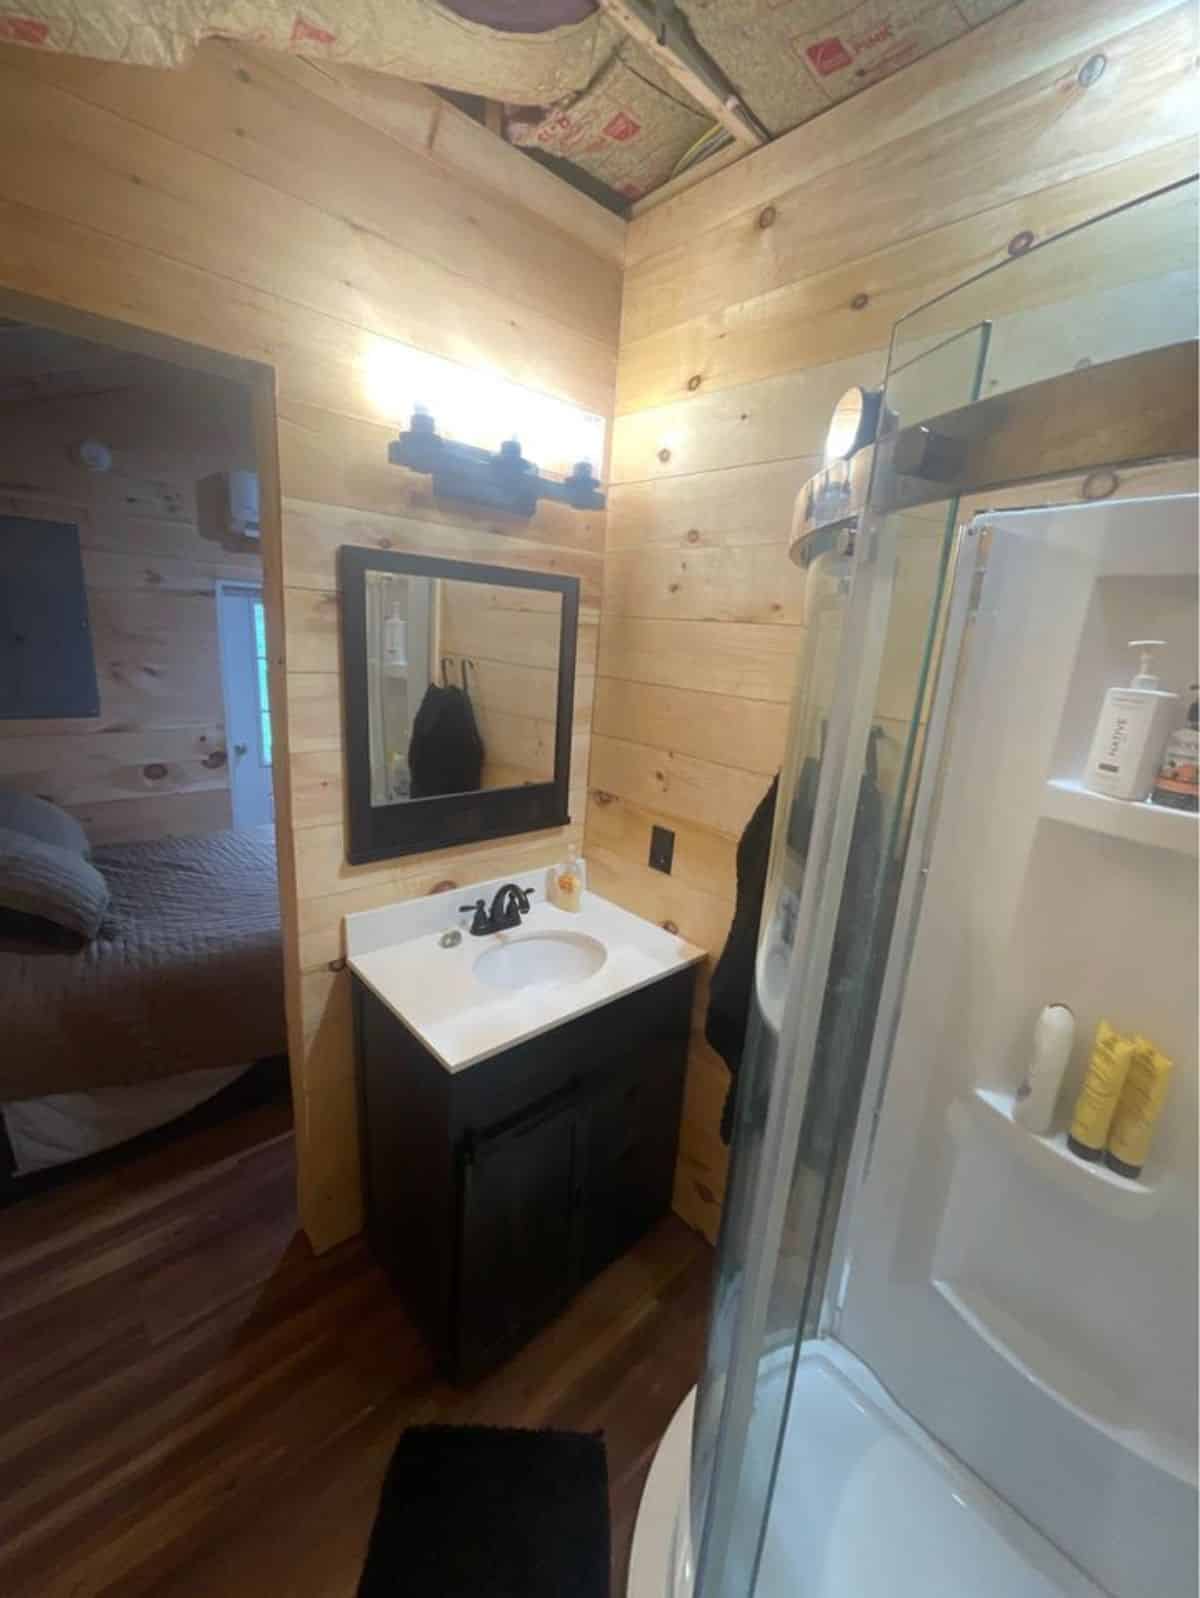 Sink with vanity & mirror in bathroom